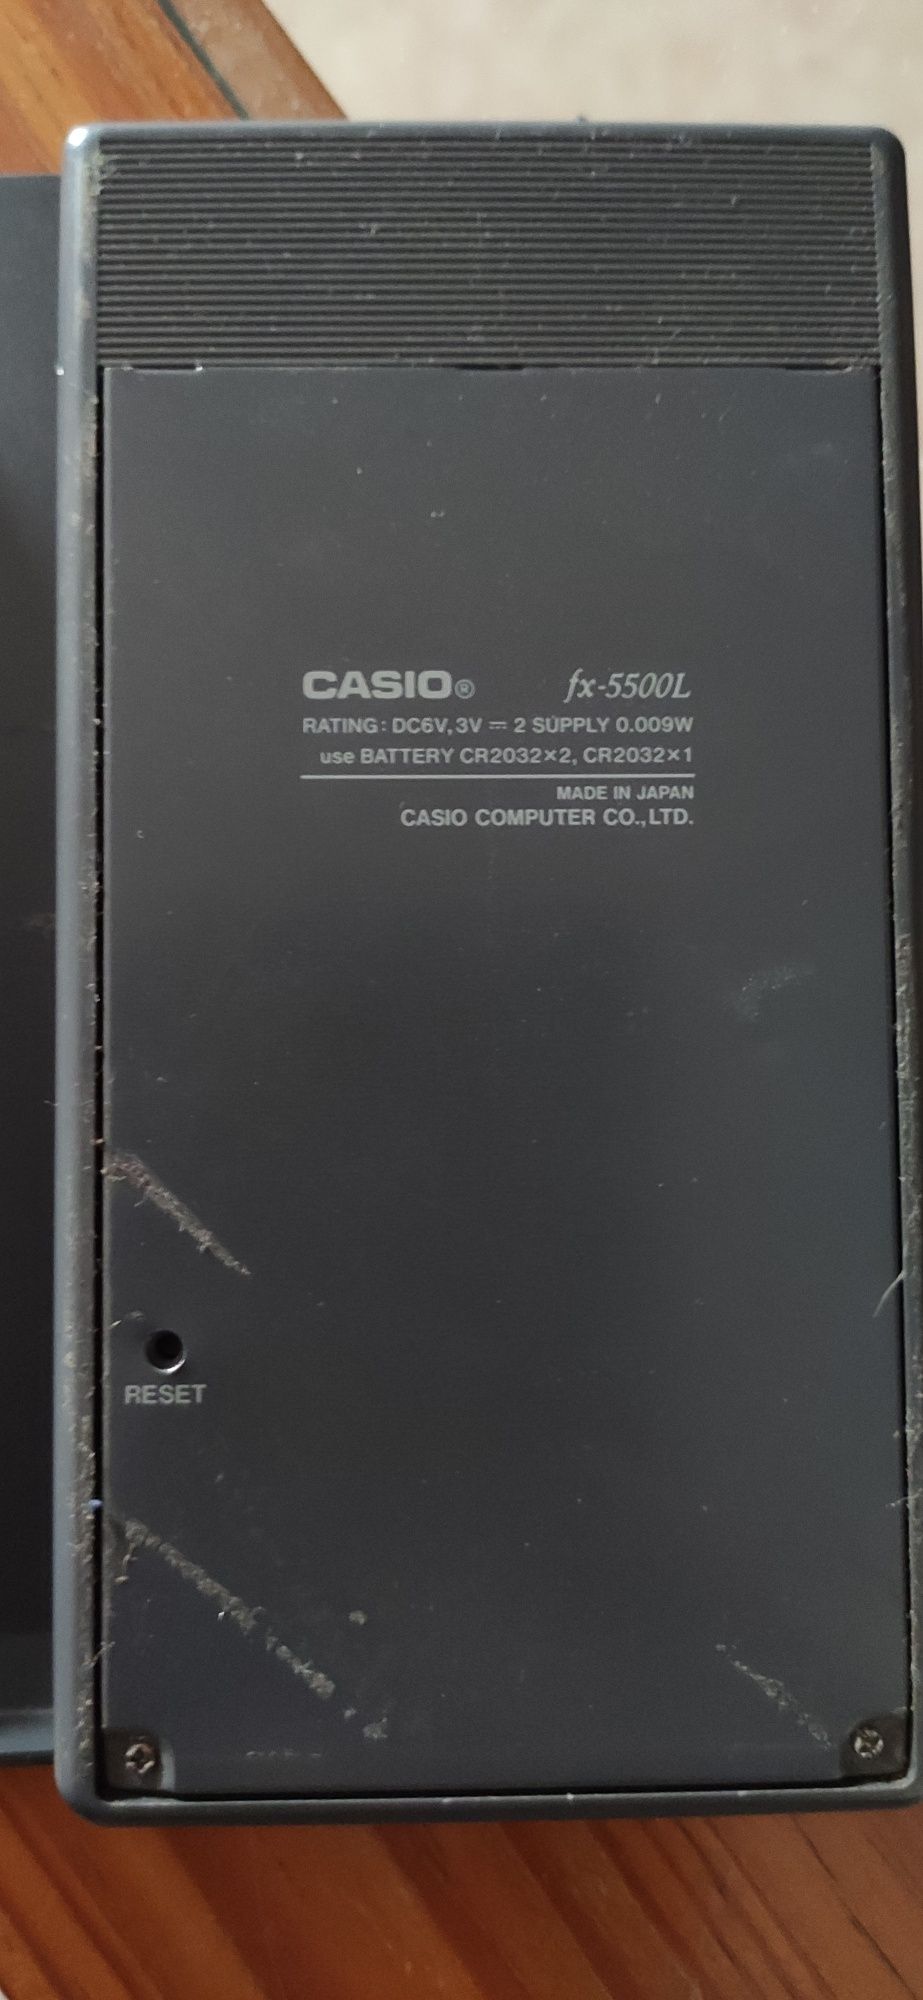 12€ Calculadora Casio fx-5500L